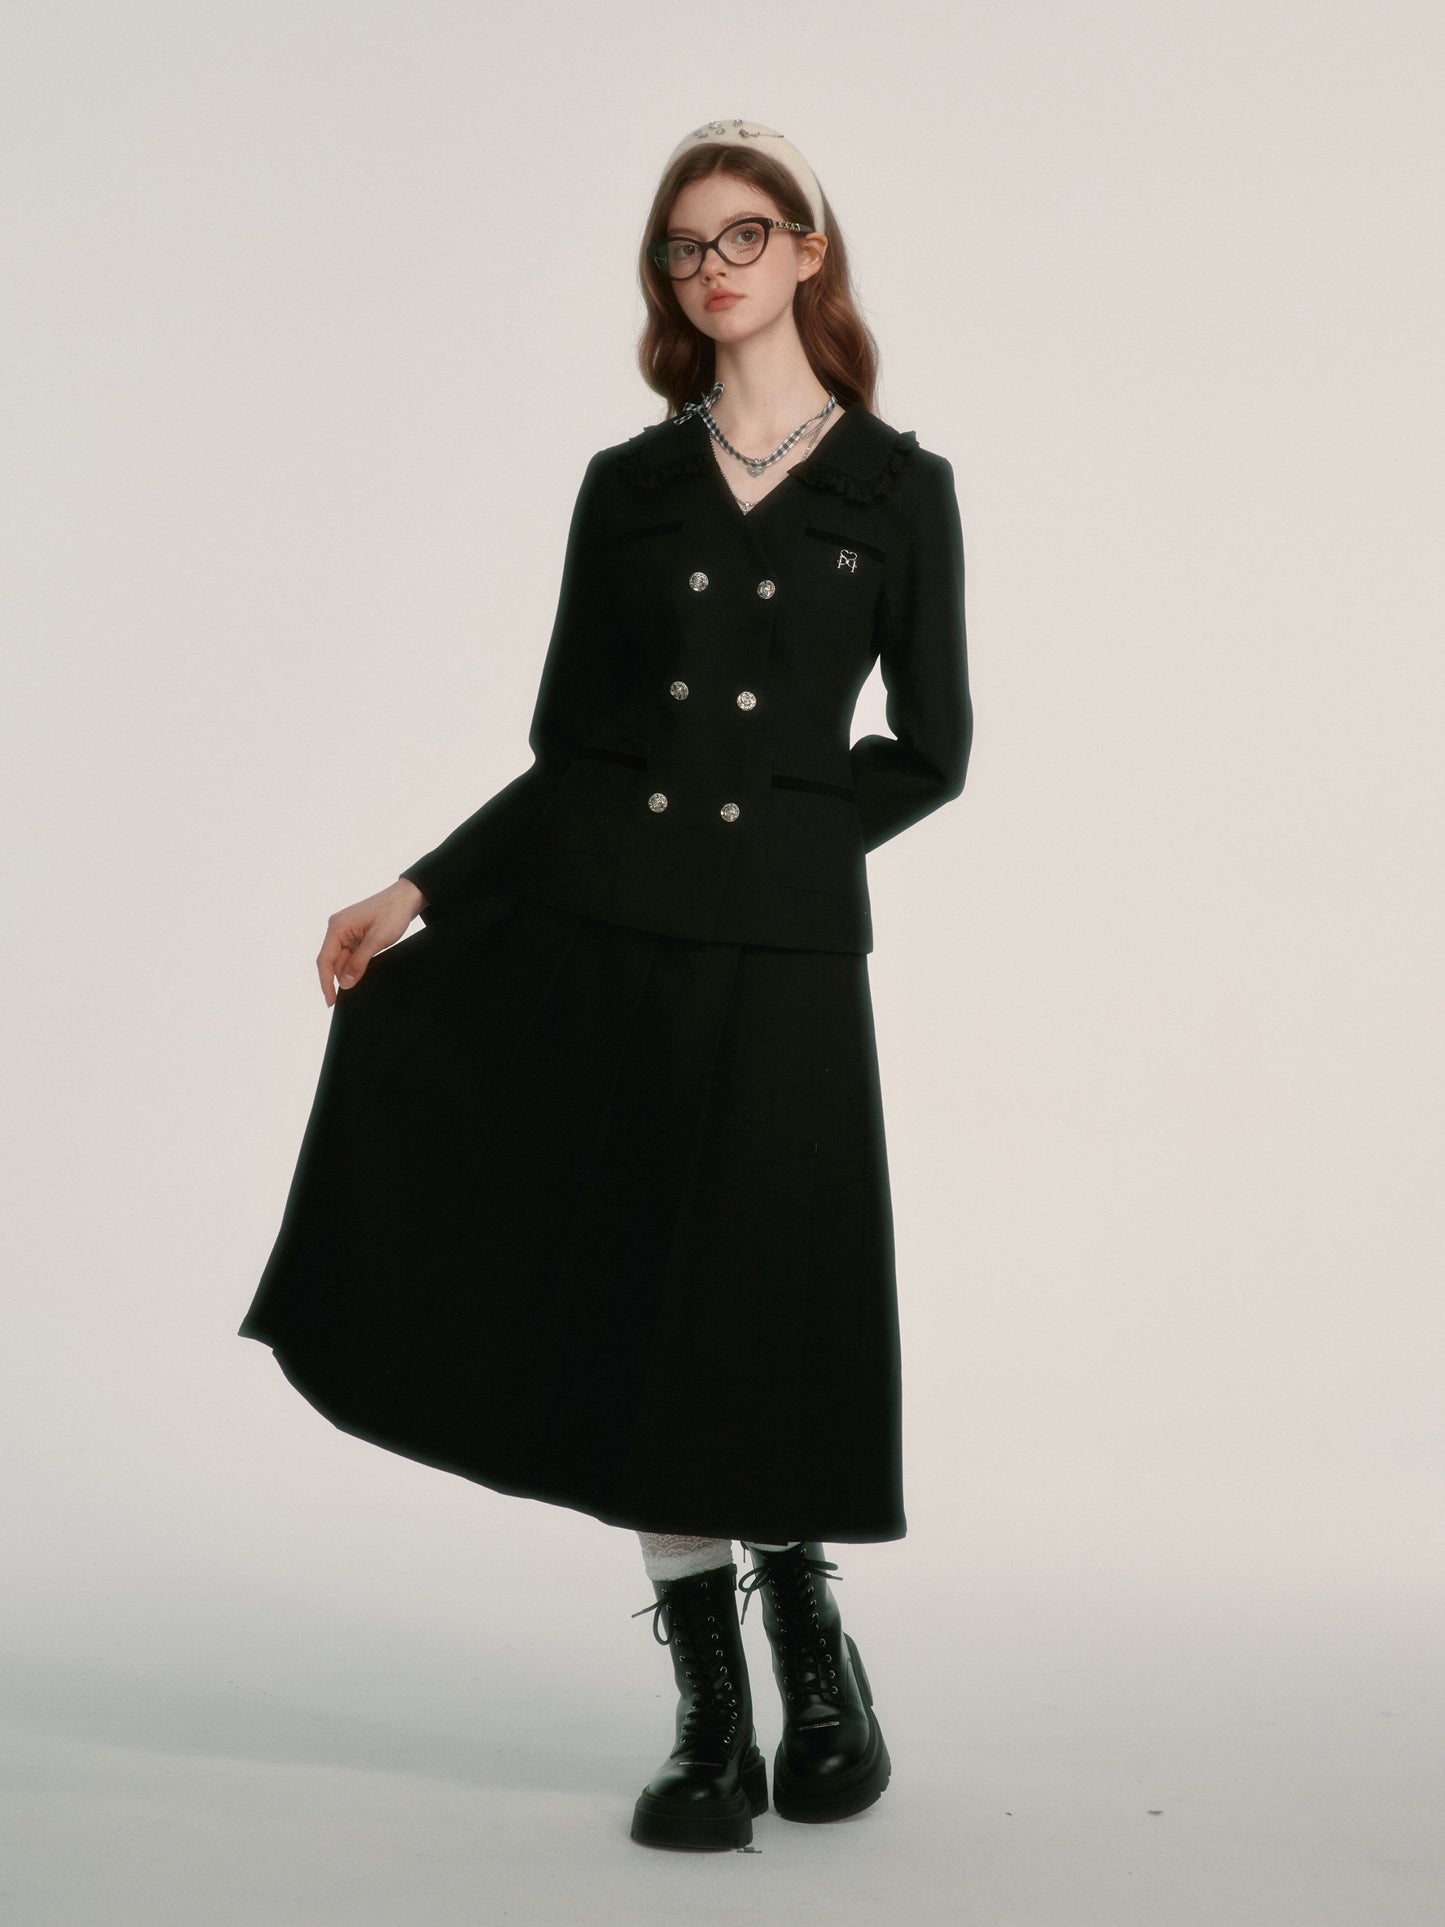 Vintage pleated skirt suit set